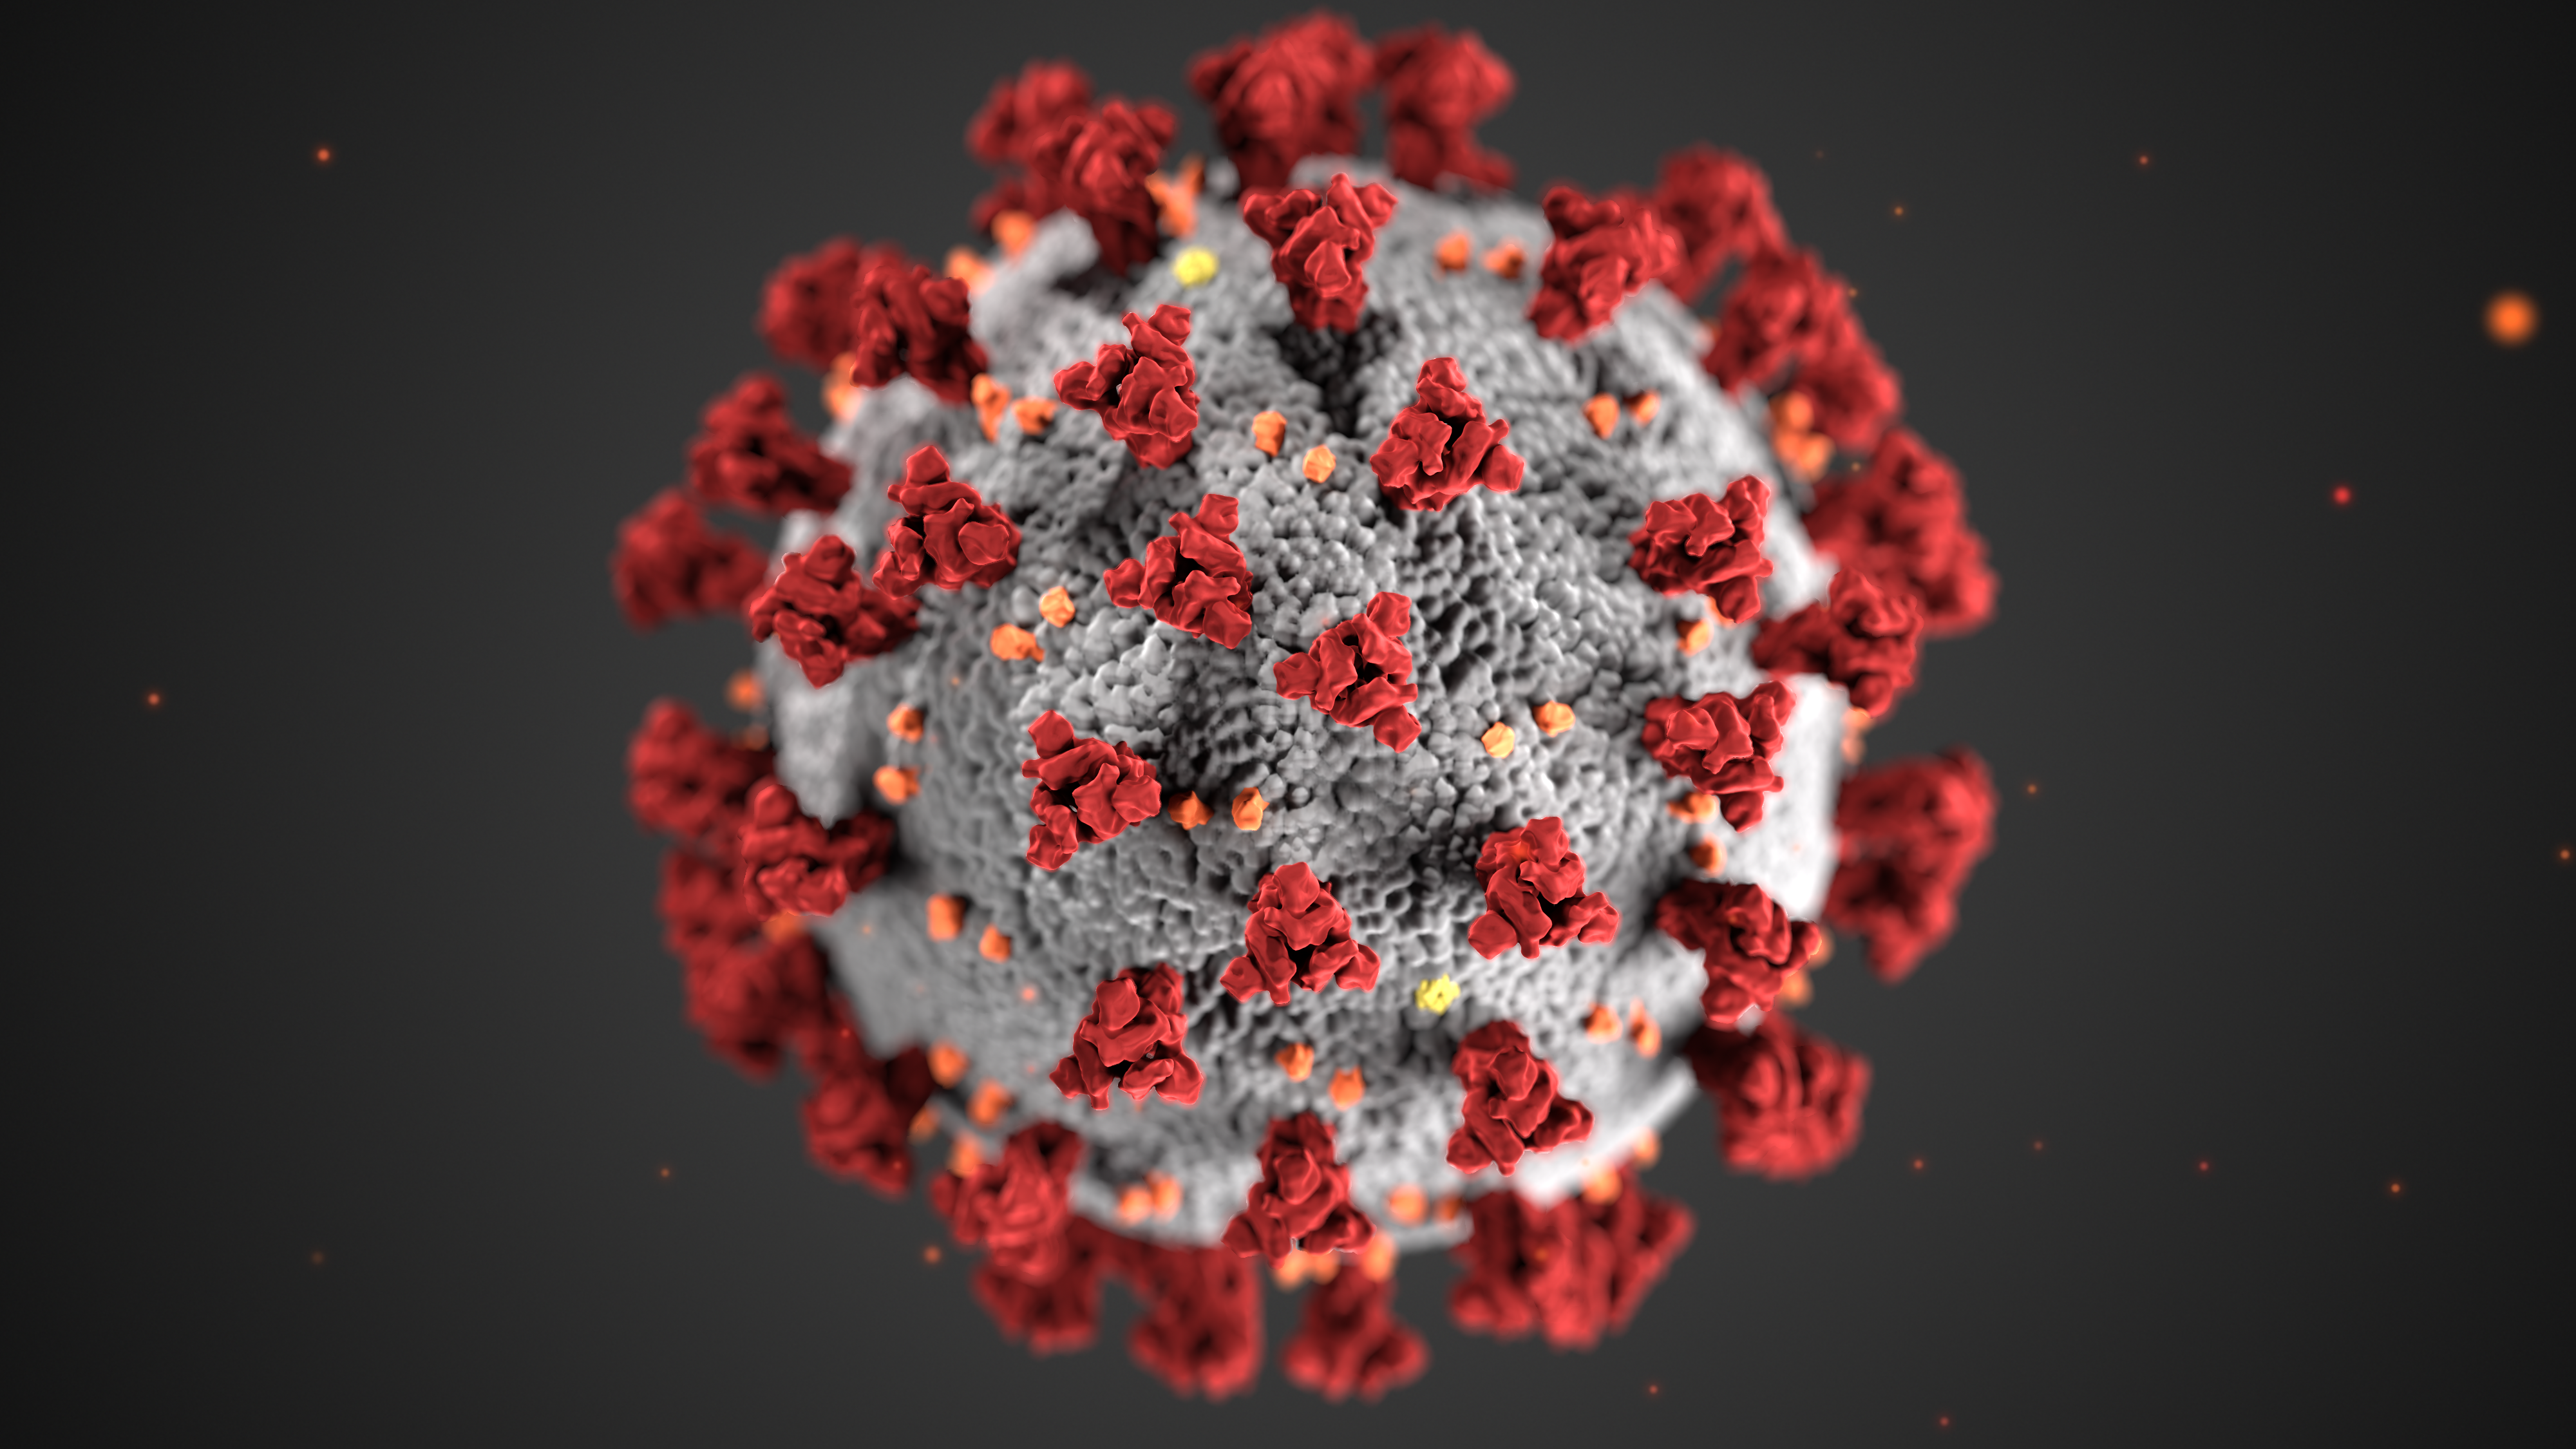 The days of Coronavirus panic should be numbered